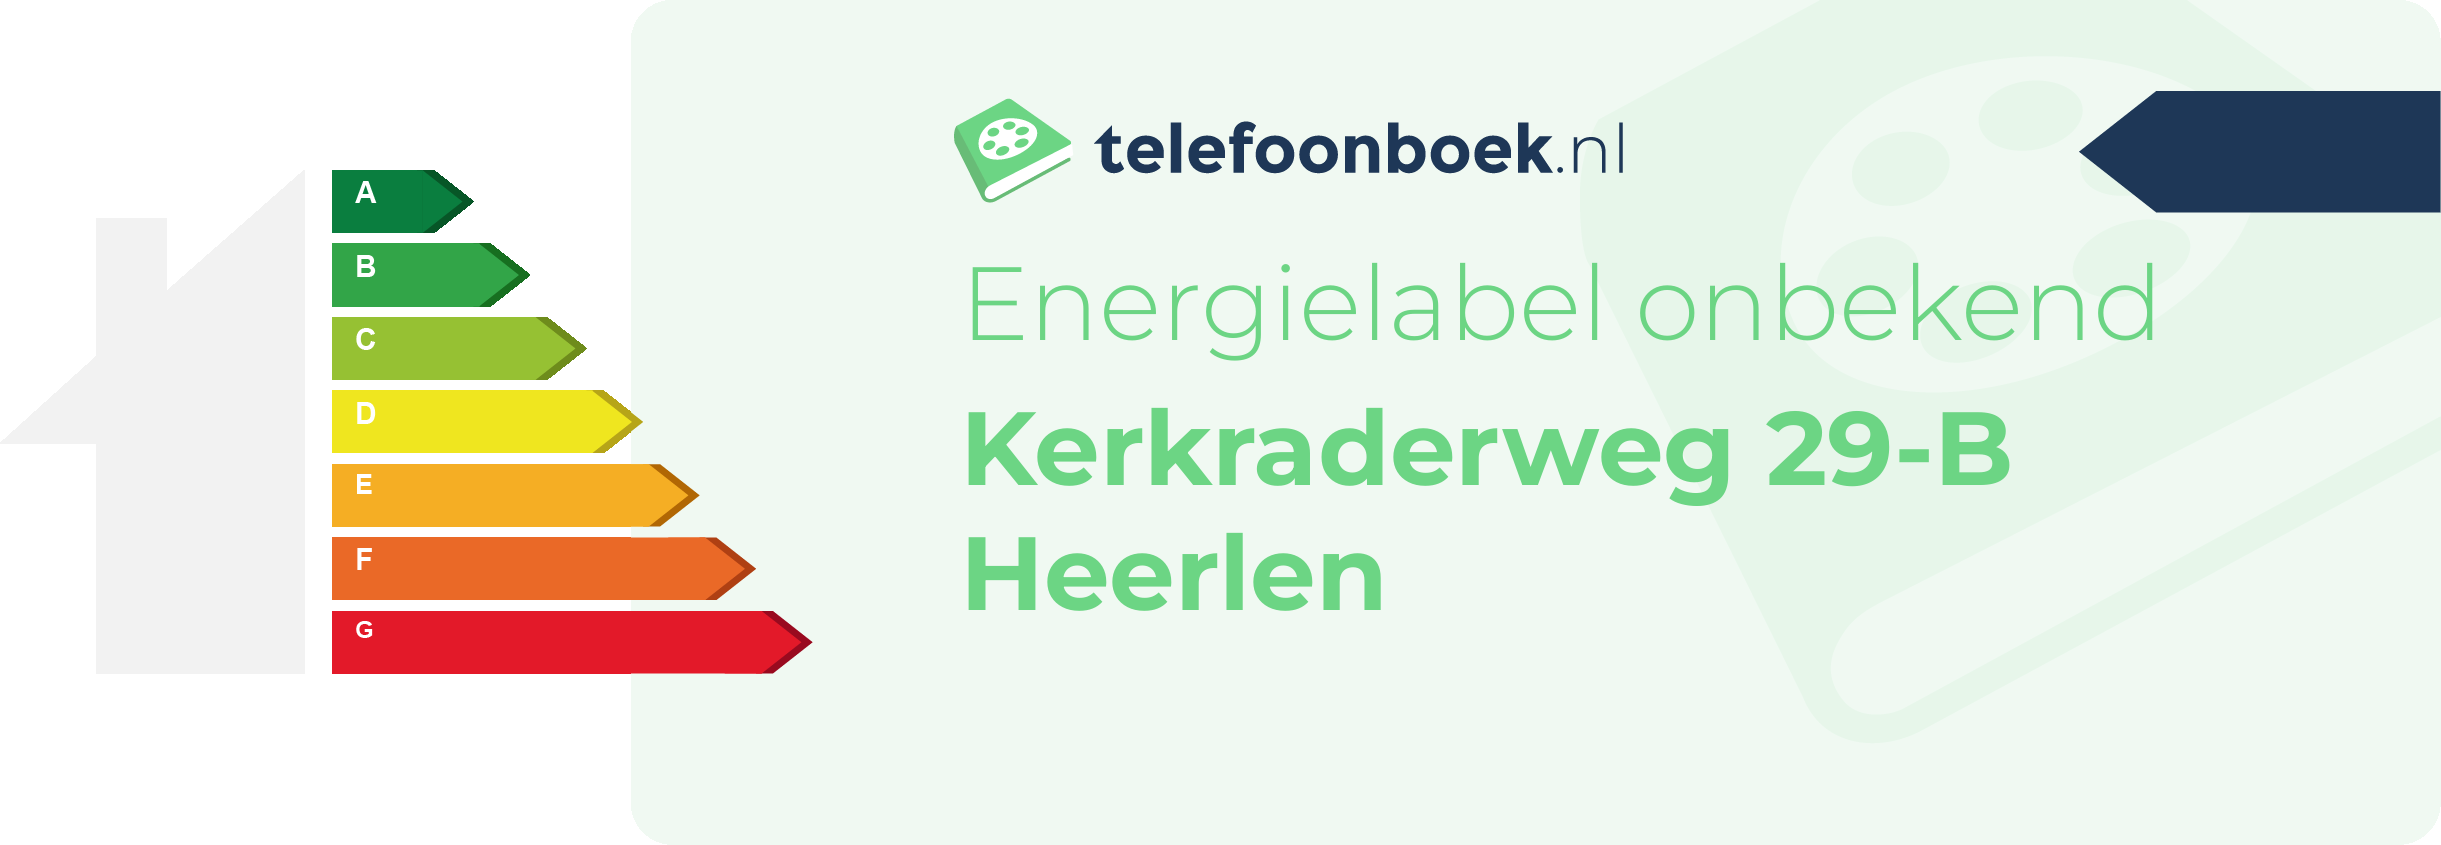 Energielabel Kerkraderweg 29-B Heerlen